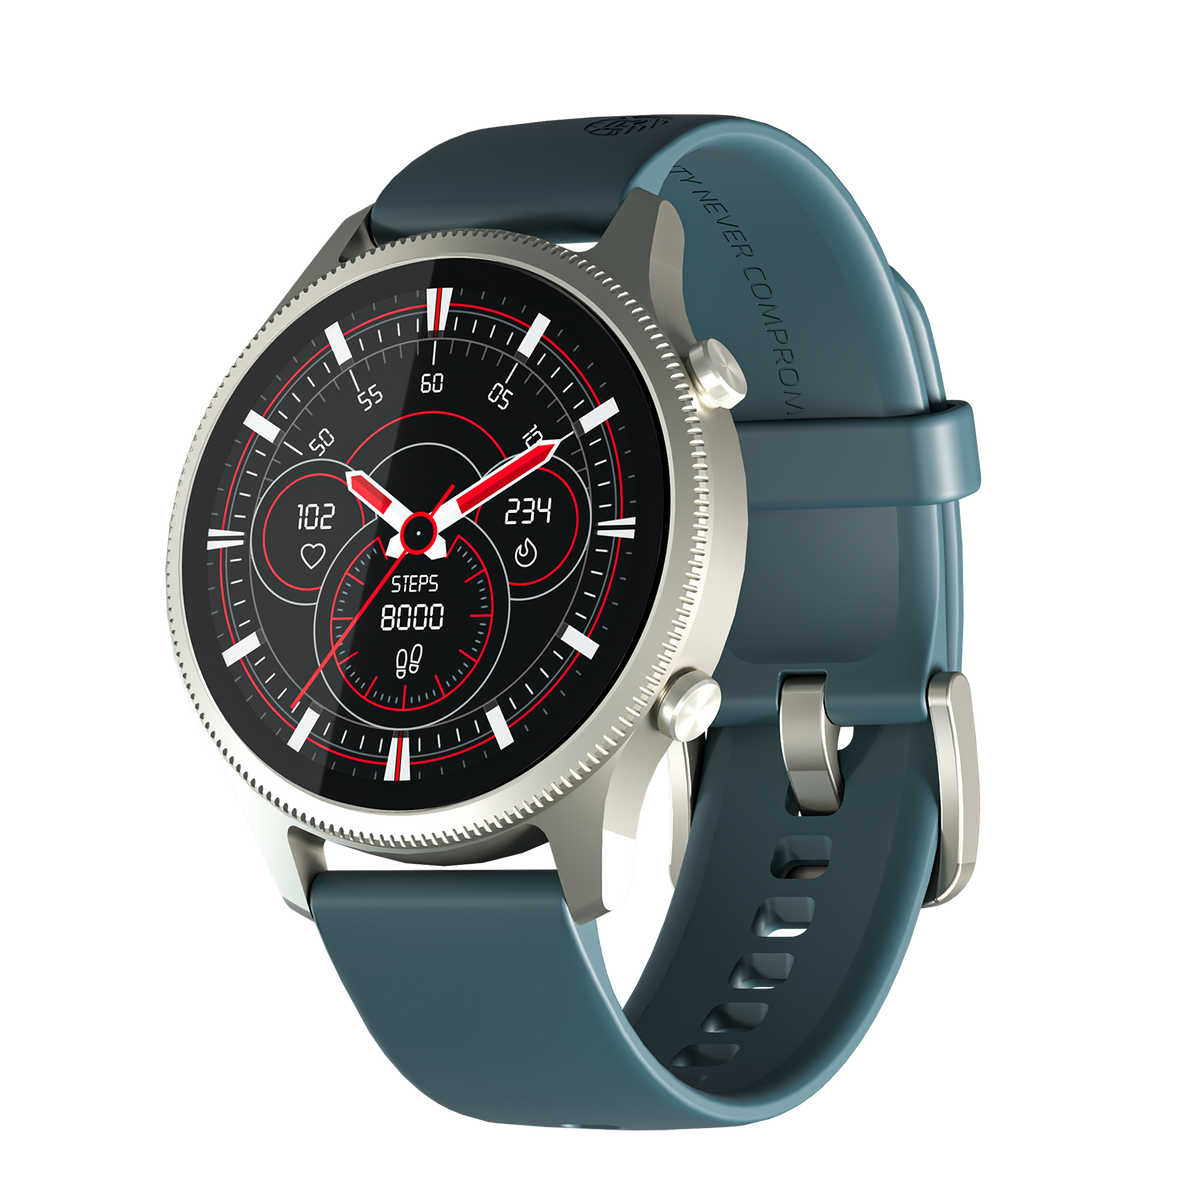 R-010 Smart Watch